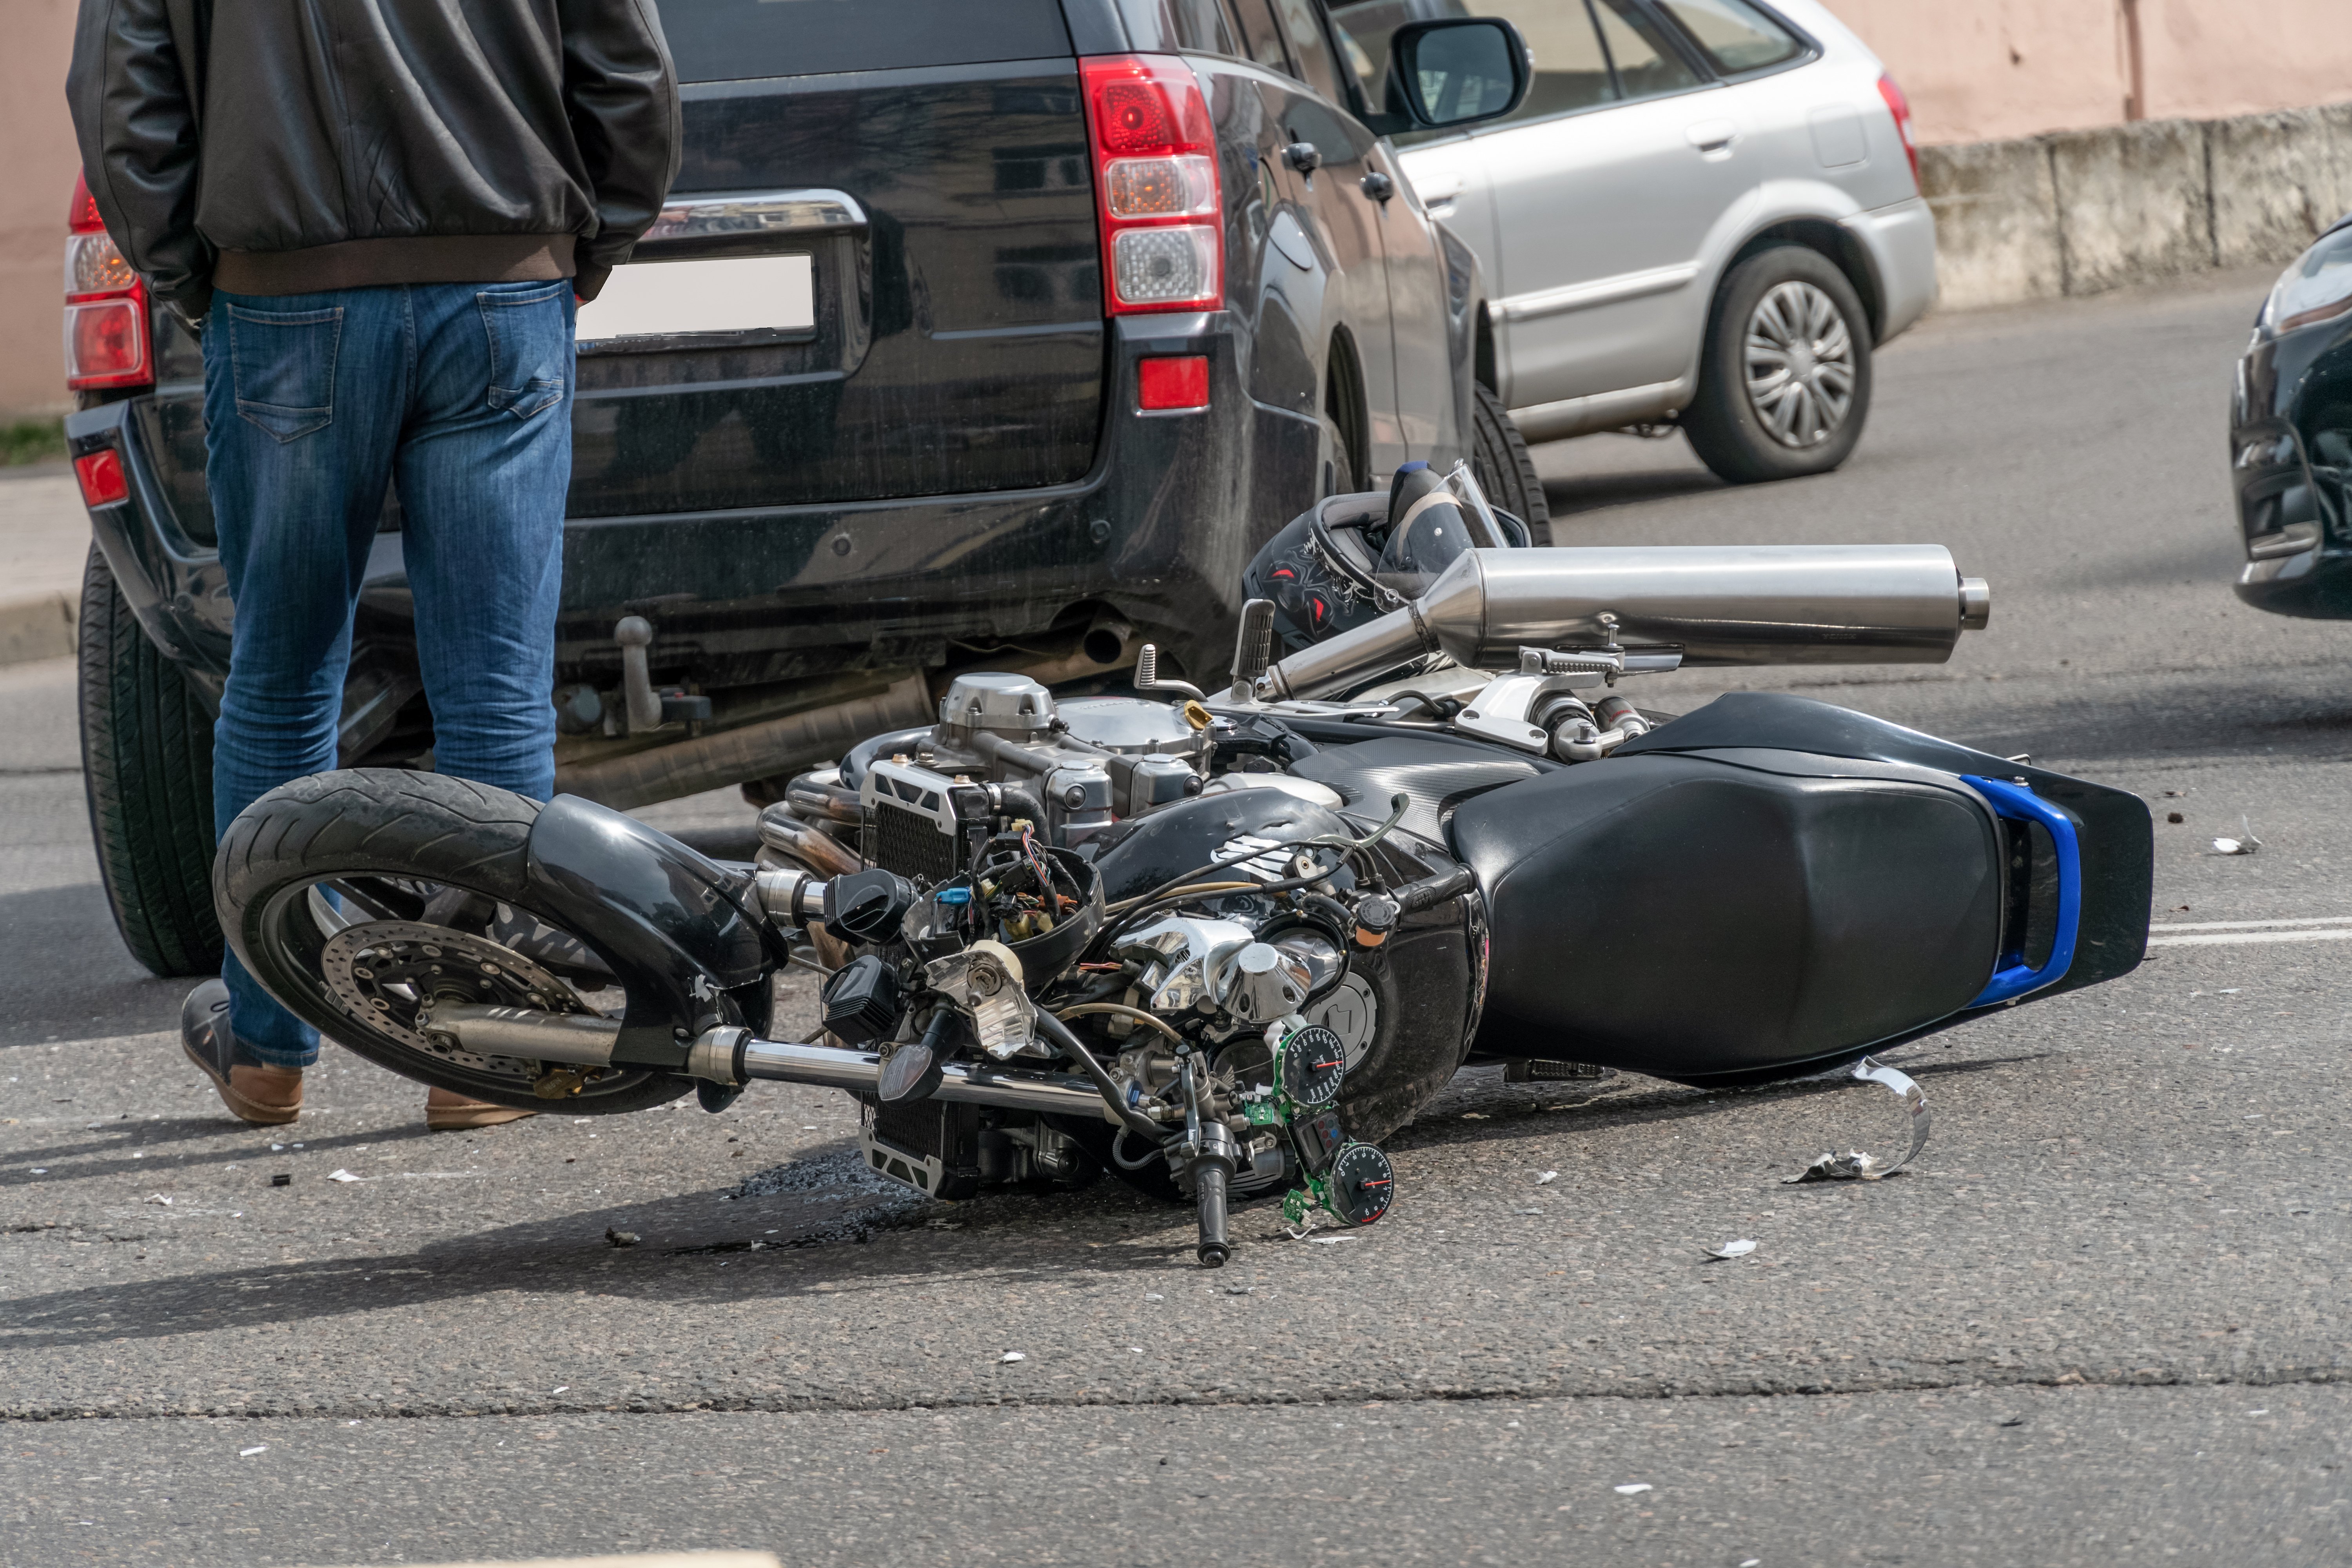 Moto caída após se envolver em acidente de trânsito